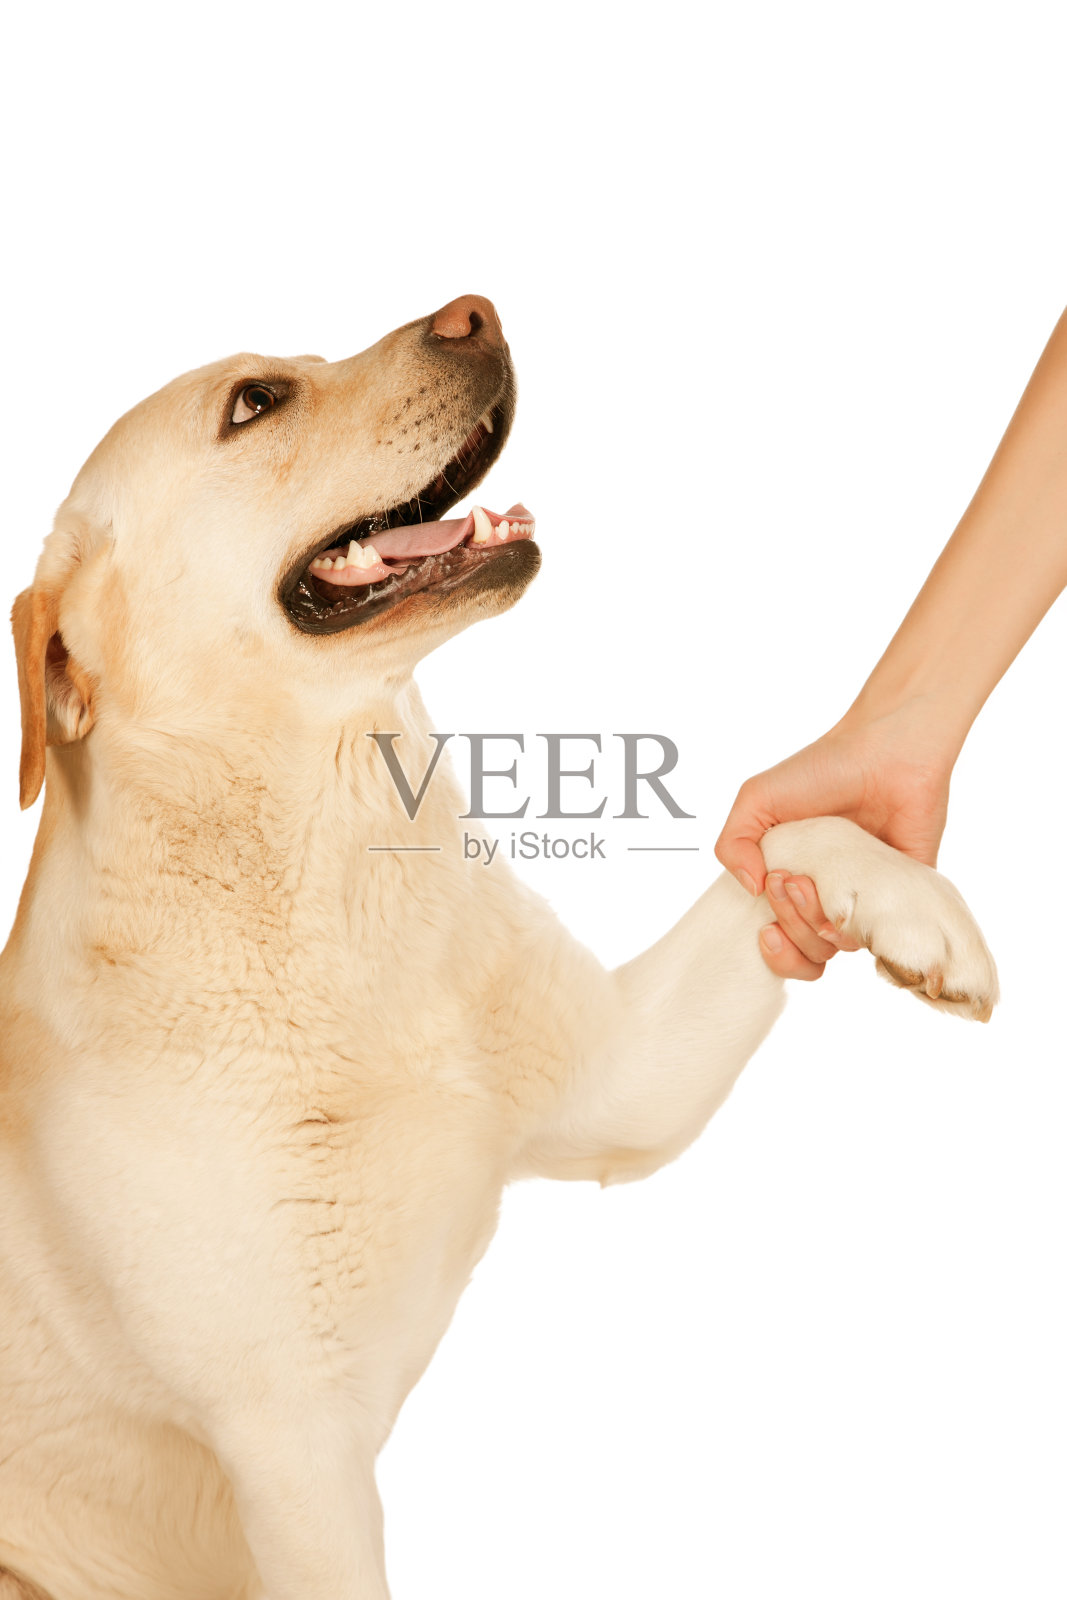 狗爪子和人的手做着握手 库存照片. 图片 包括有 夹住, 宠物, 逗人喜爱, 感觉, 现有量, 统一性, 哺乳动物 - 41468016